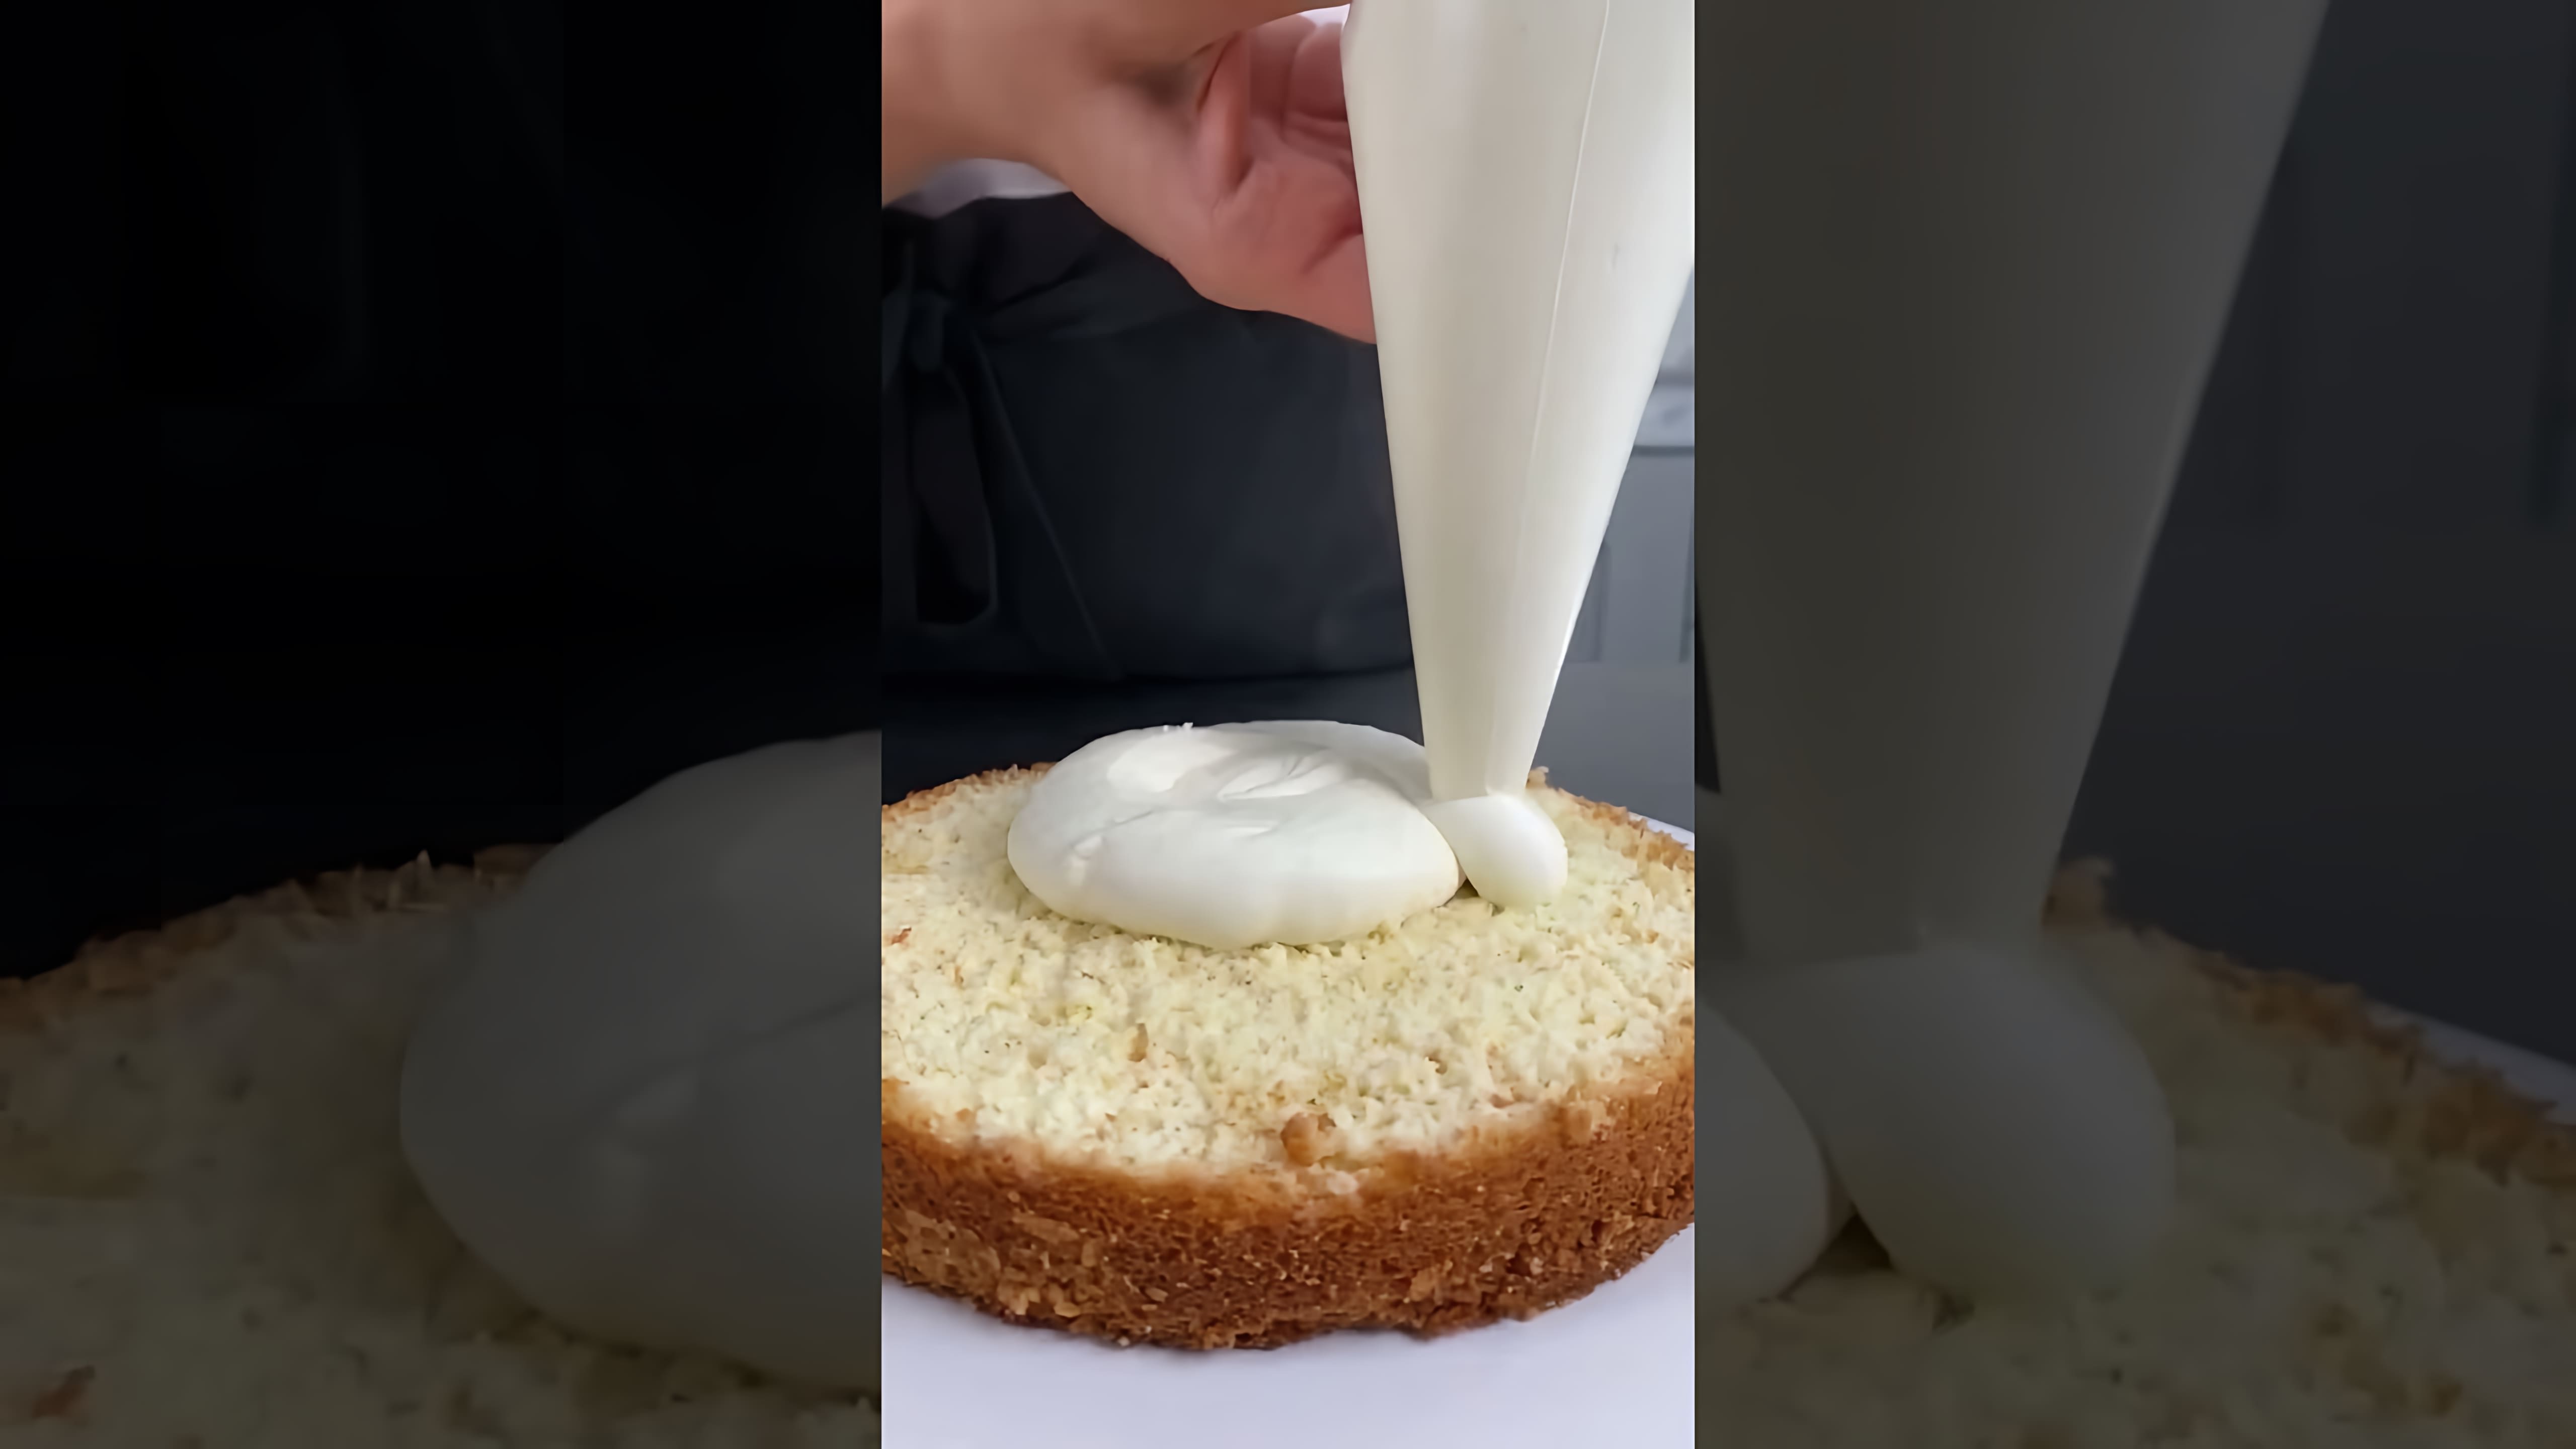 "А ты ПРОПИТЫВАЕШЬ торты?" - это видео-ролик, который показывает, как правильно пропитывать торты, чтобы они были сочными и вкусными